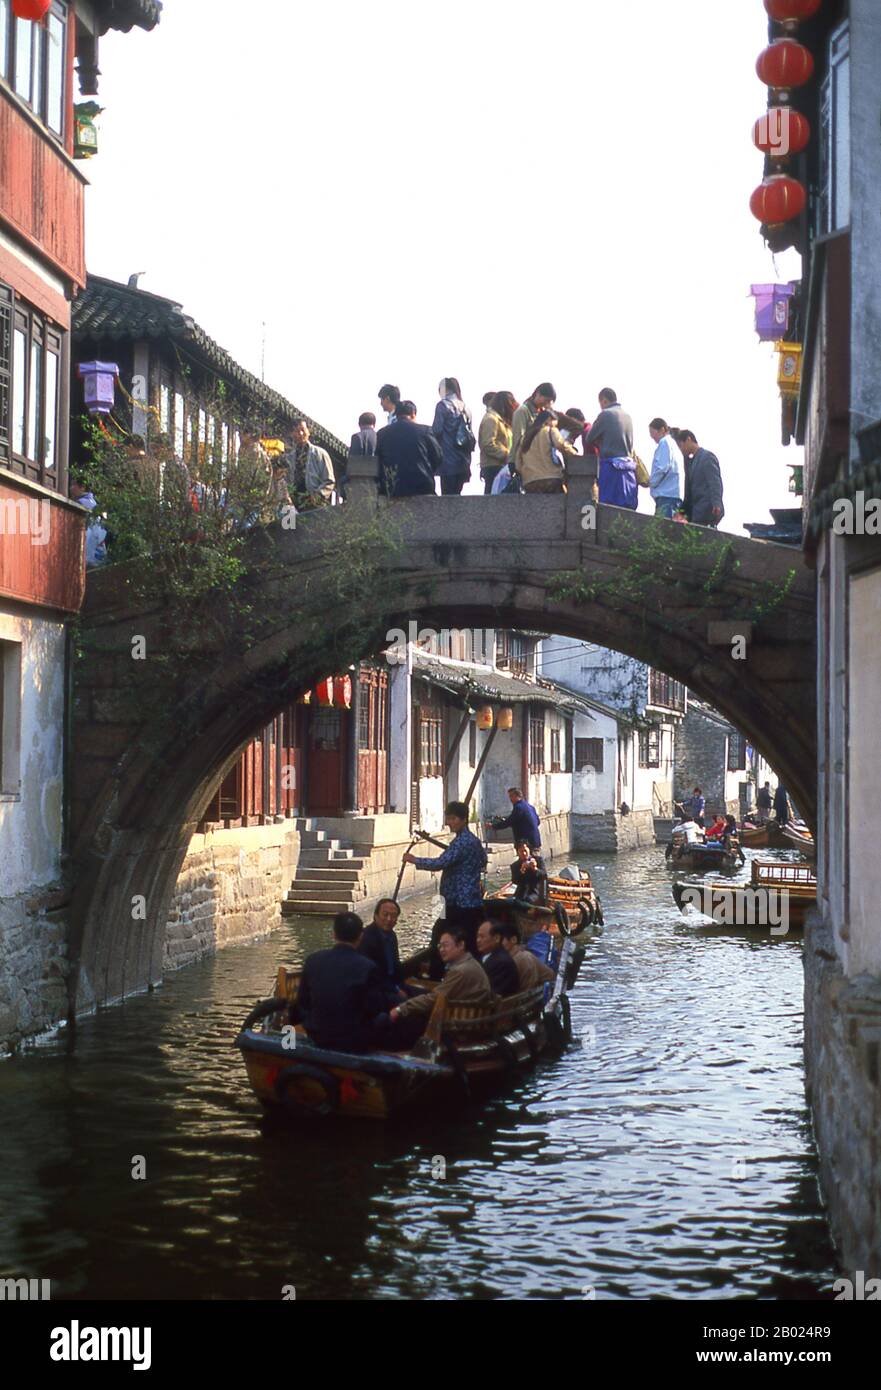 Zhouzhuang est l'une des villes d'eau les plus célèbres en Chine et remonte À la Période du printemps et de l'automne (770 BCE - 476 BCE). La plupart des anciens propres vues aujourd'hui a été en fait construite pendant les périodes de Ming ou de Qing. Banque D'Images